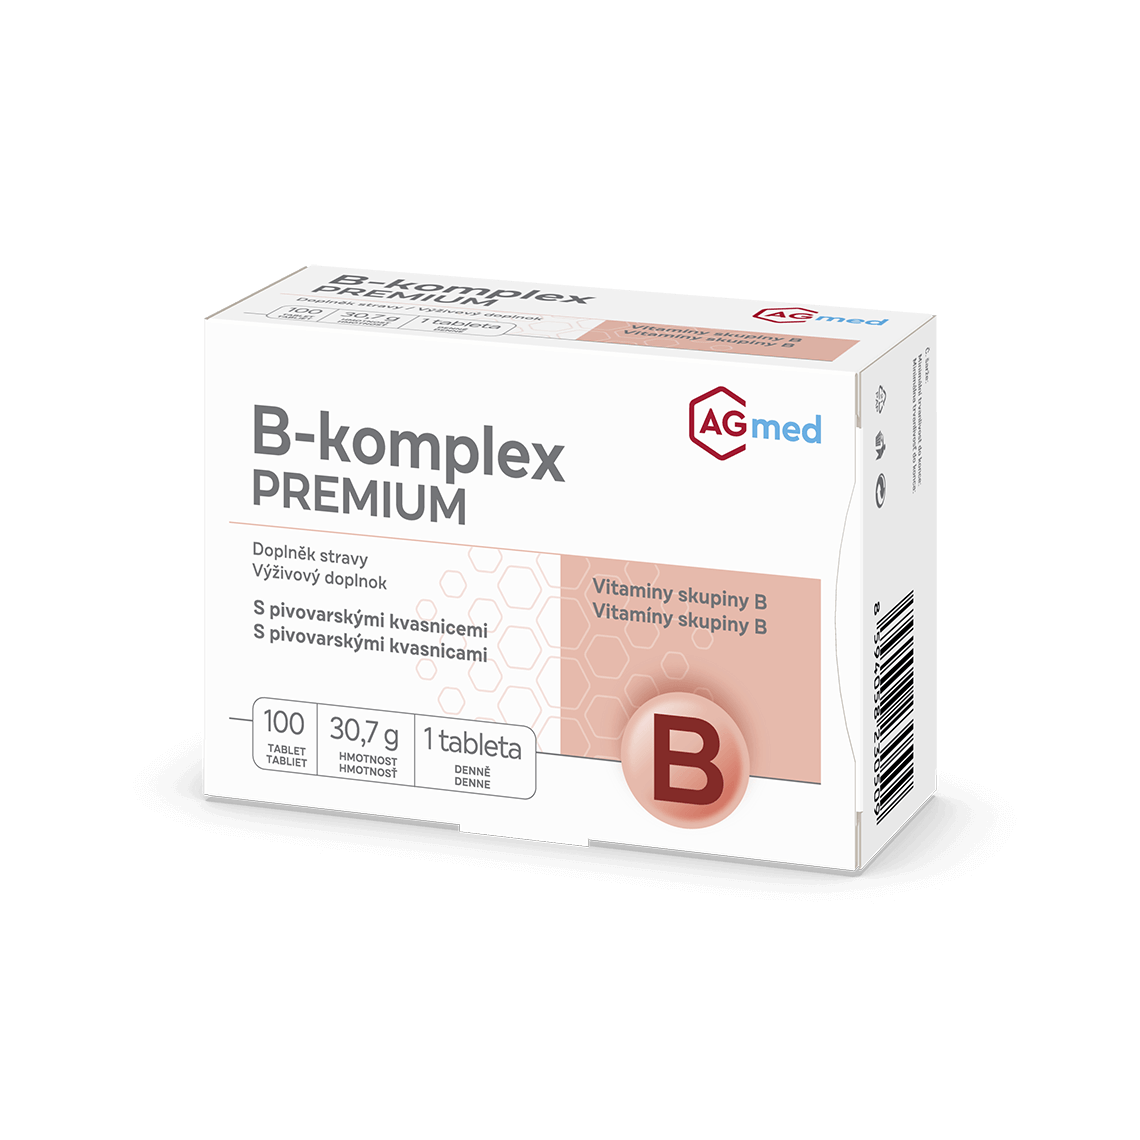 B-komplex PREMIUM tbl.100 AGmed